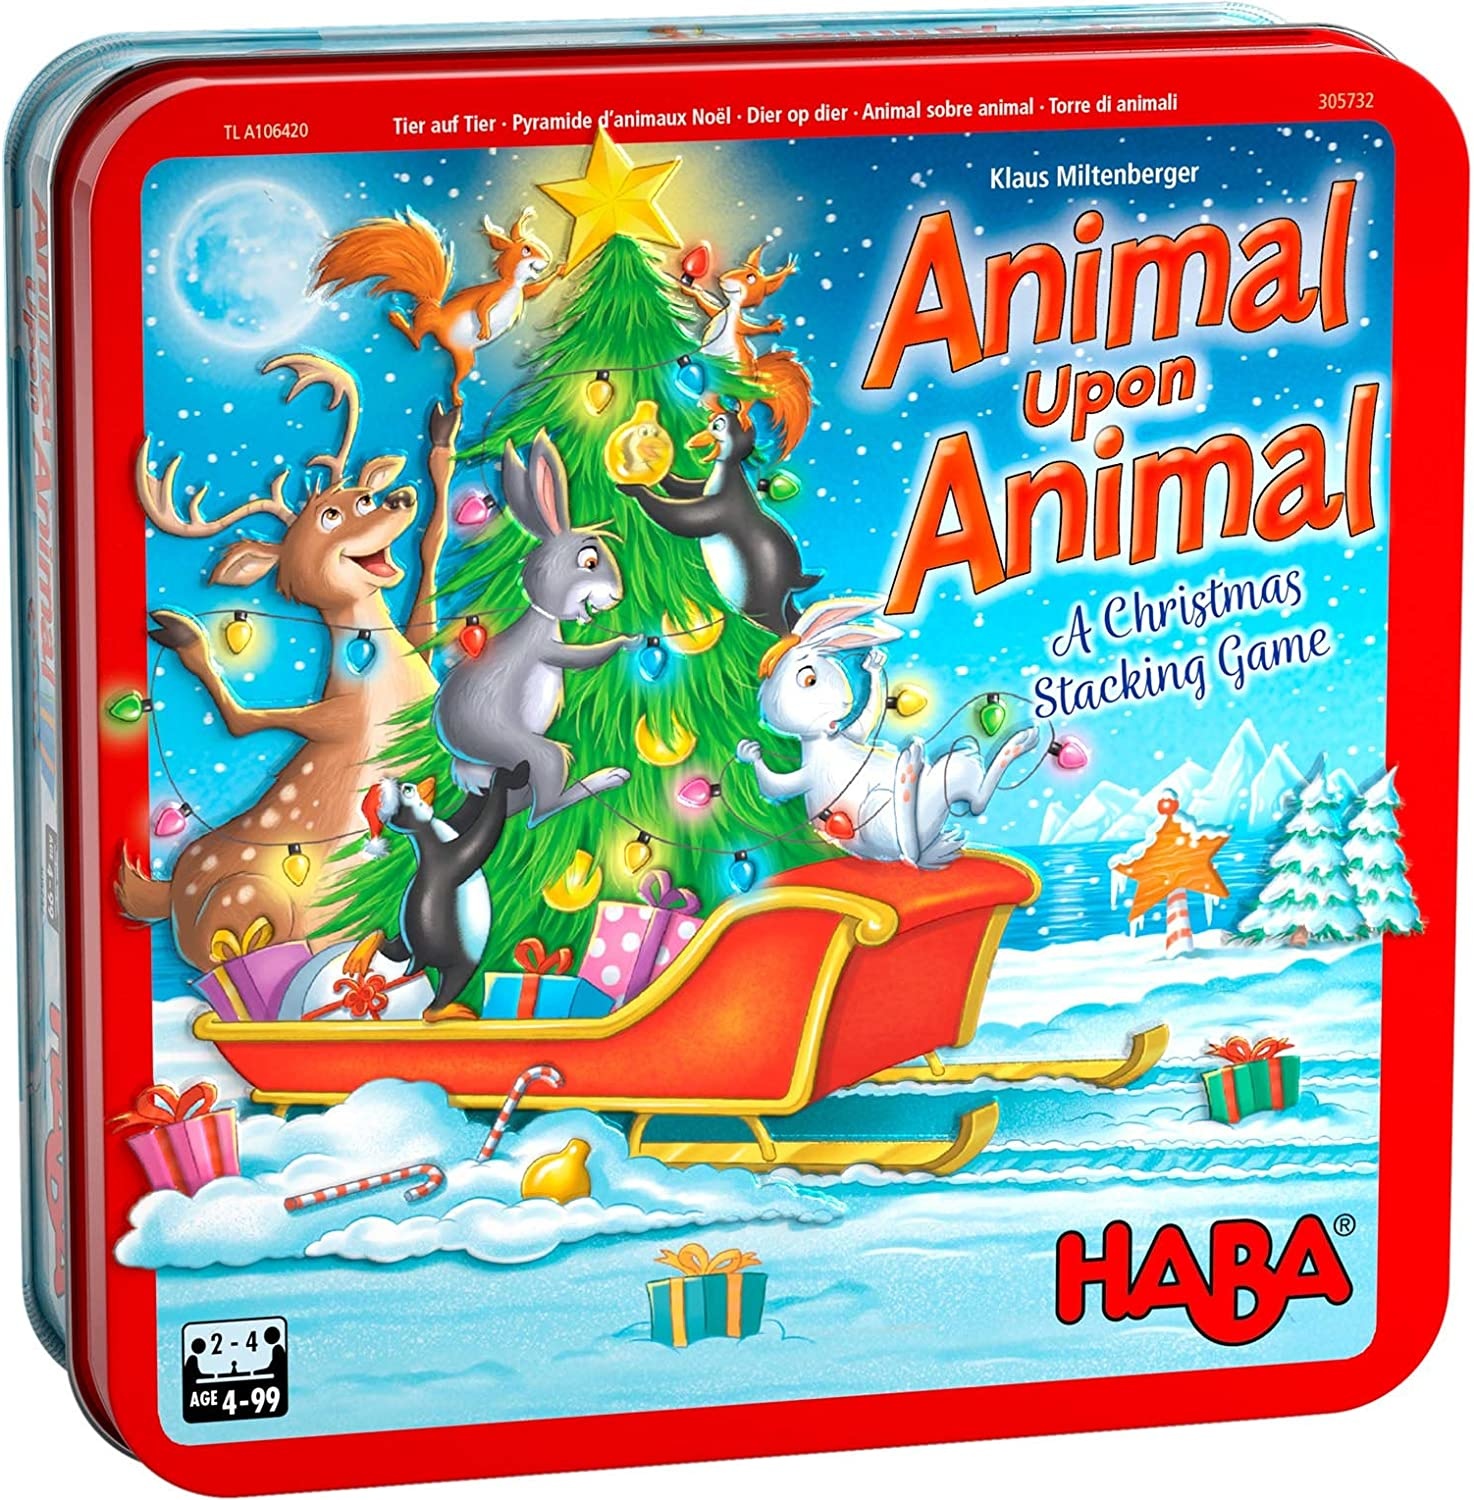 Haba Animal Upon Animal, A Christmas Stacking Game